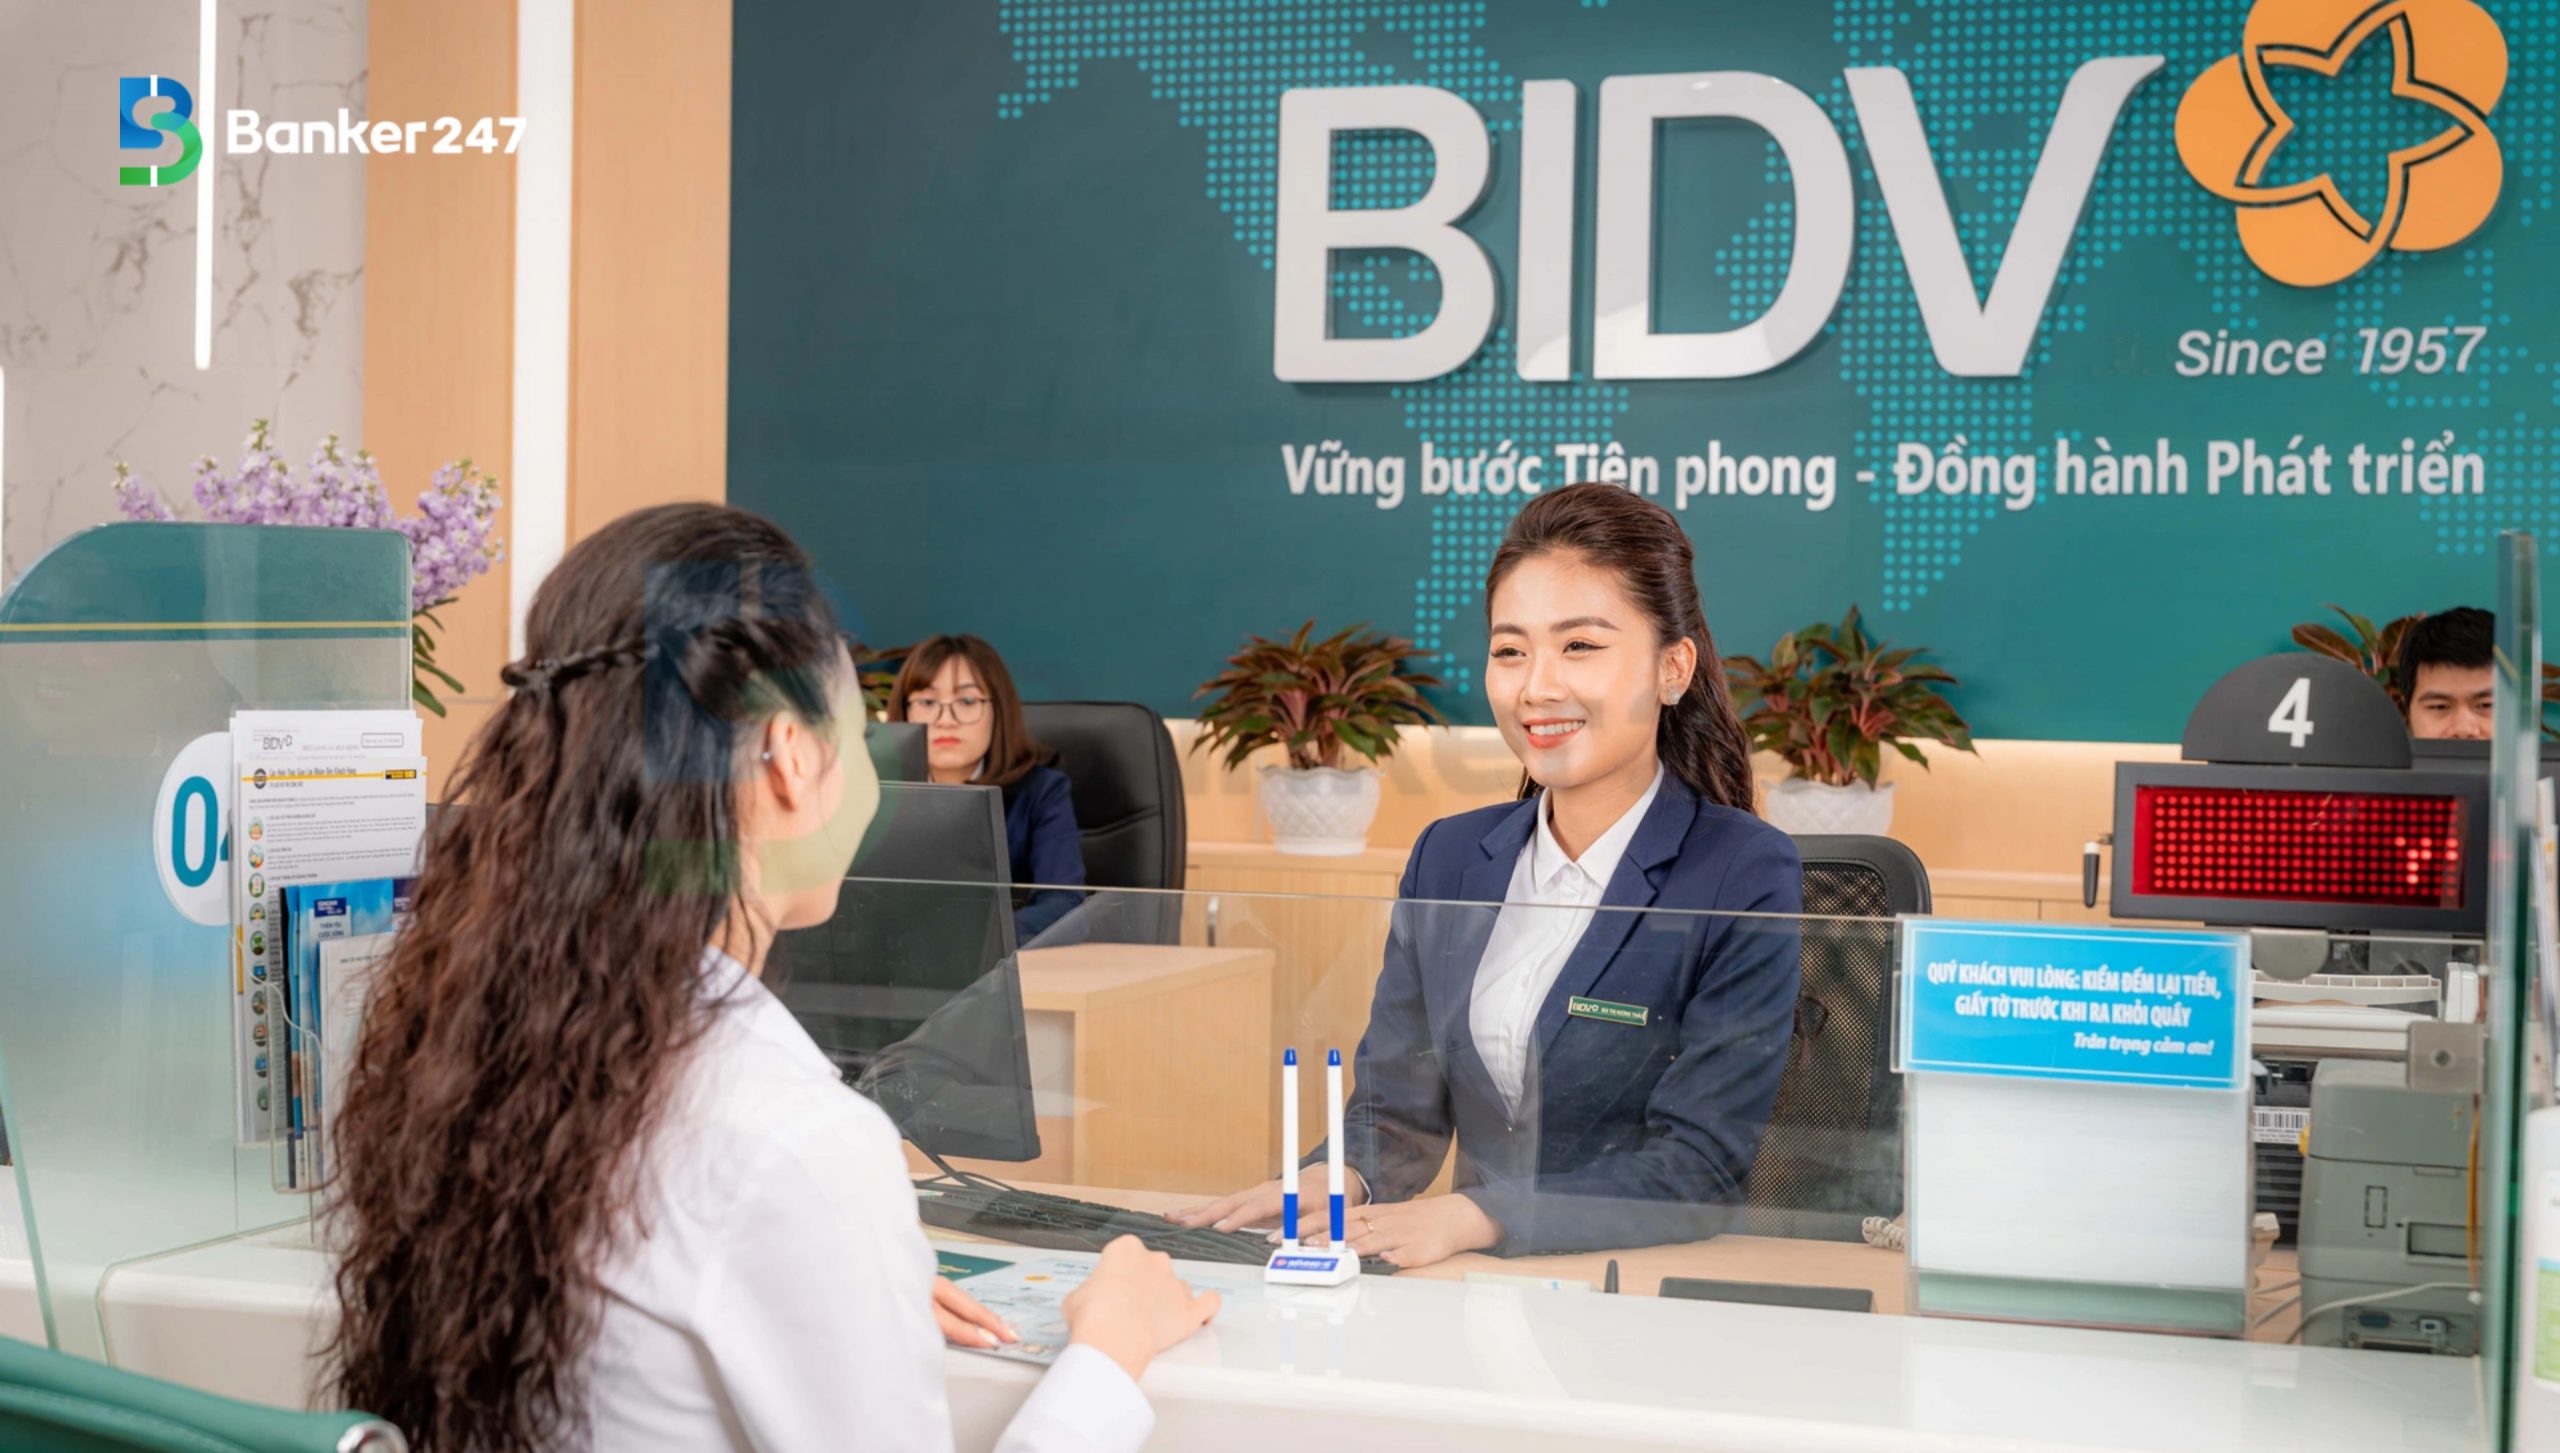 Ngân hàng đầu tư và phát triển Việt Nam - BIDV